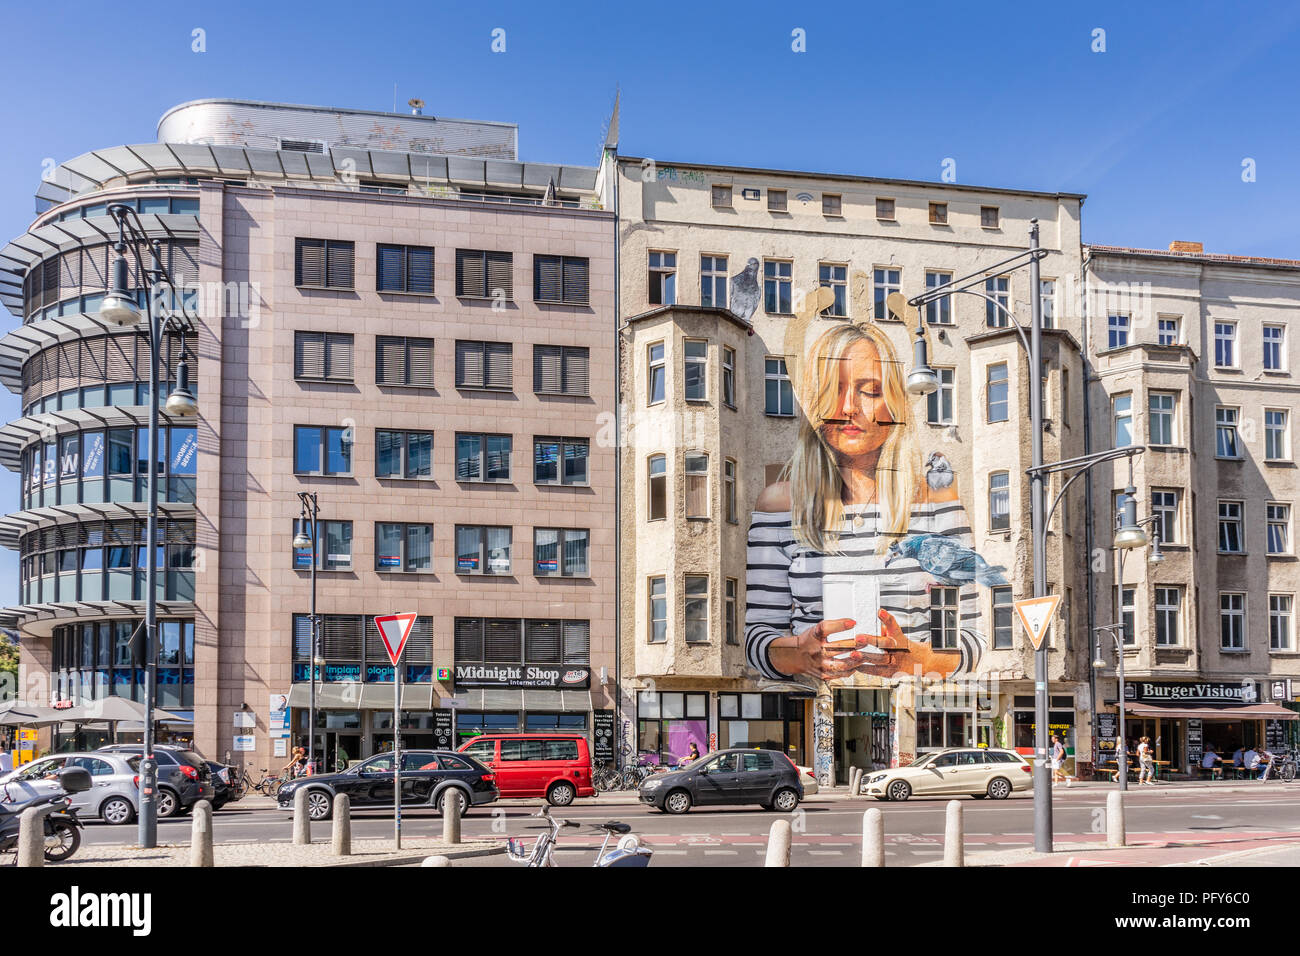 Urban Street Szene mit Street Art Graffiti an einer Fassade in der Schönhauser Allee im Berliner Bezirk Mitte Sommer 2018, Berlin, Deutschland Stockfoto